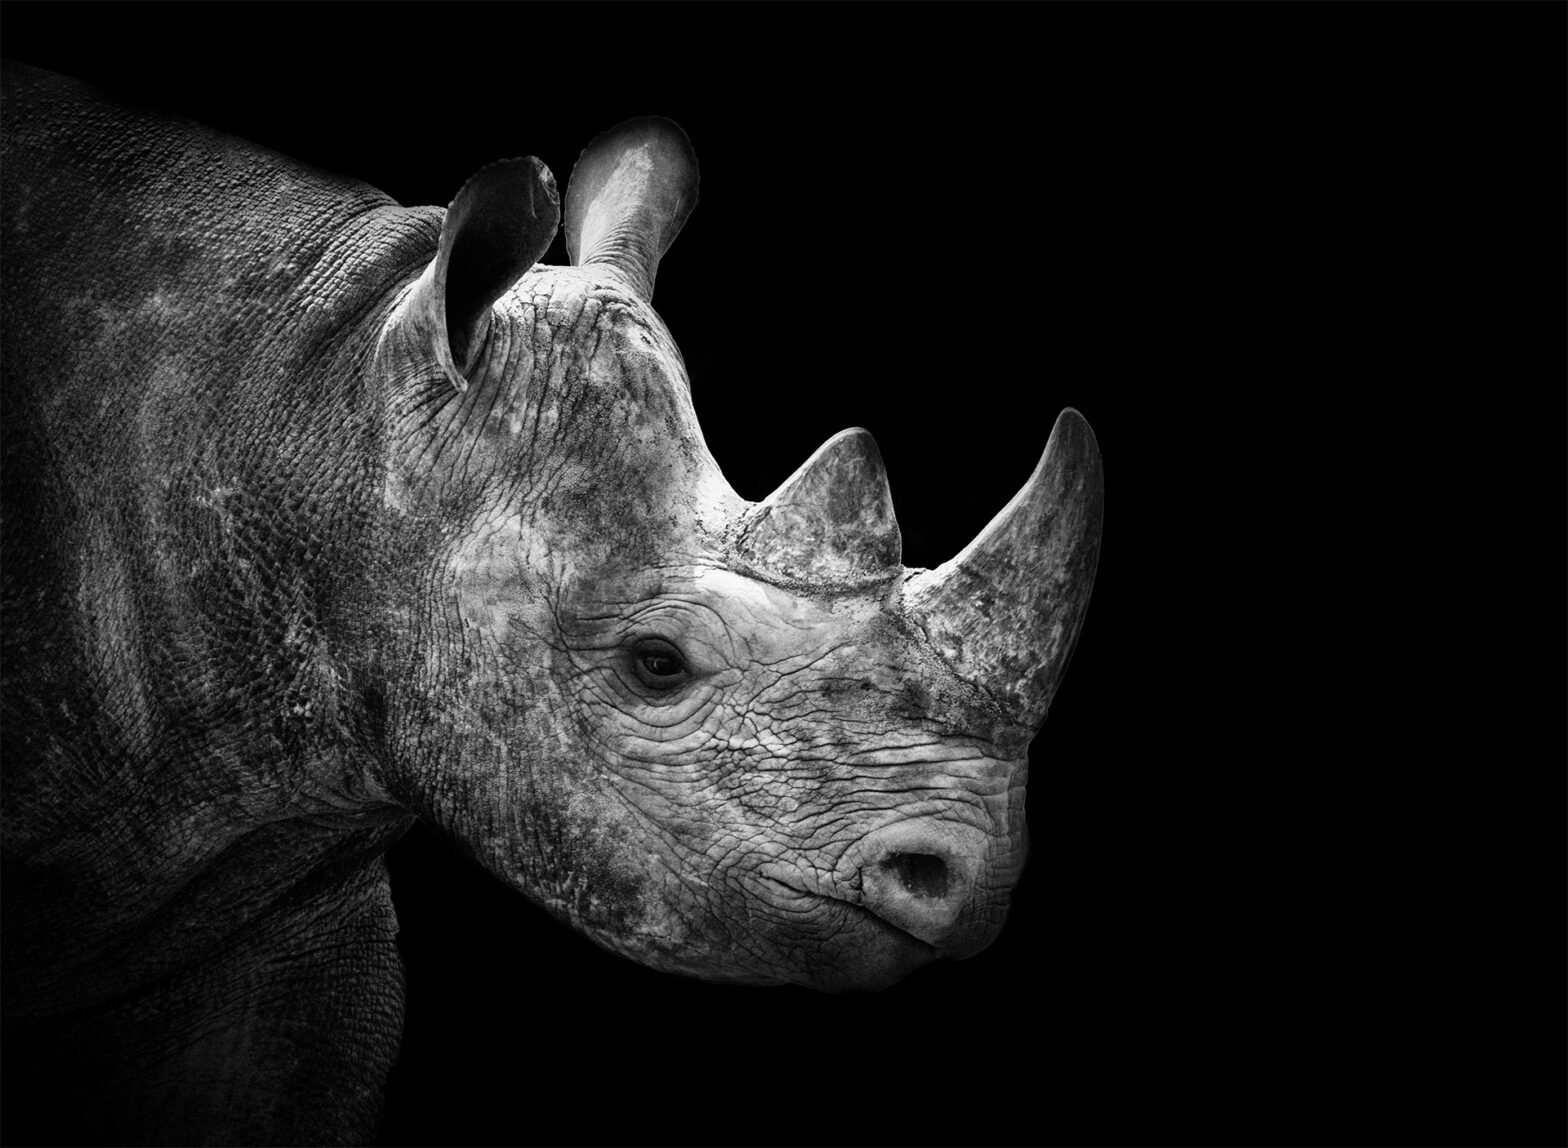 De Beers boosts rhino rescue in Botswana – De Beers Group